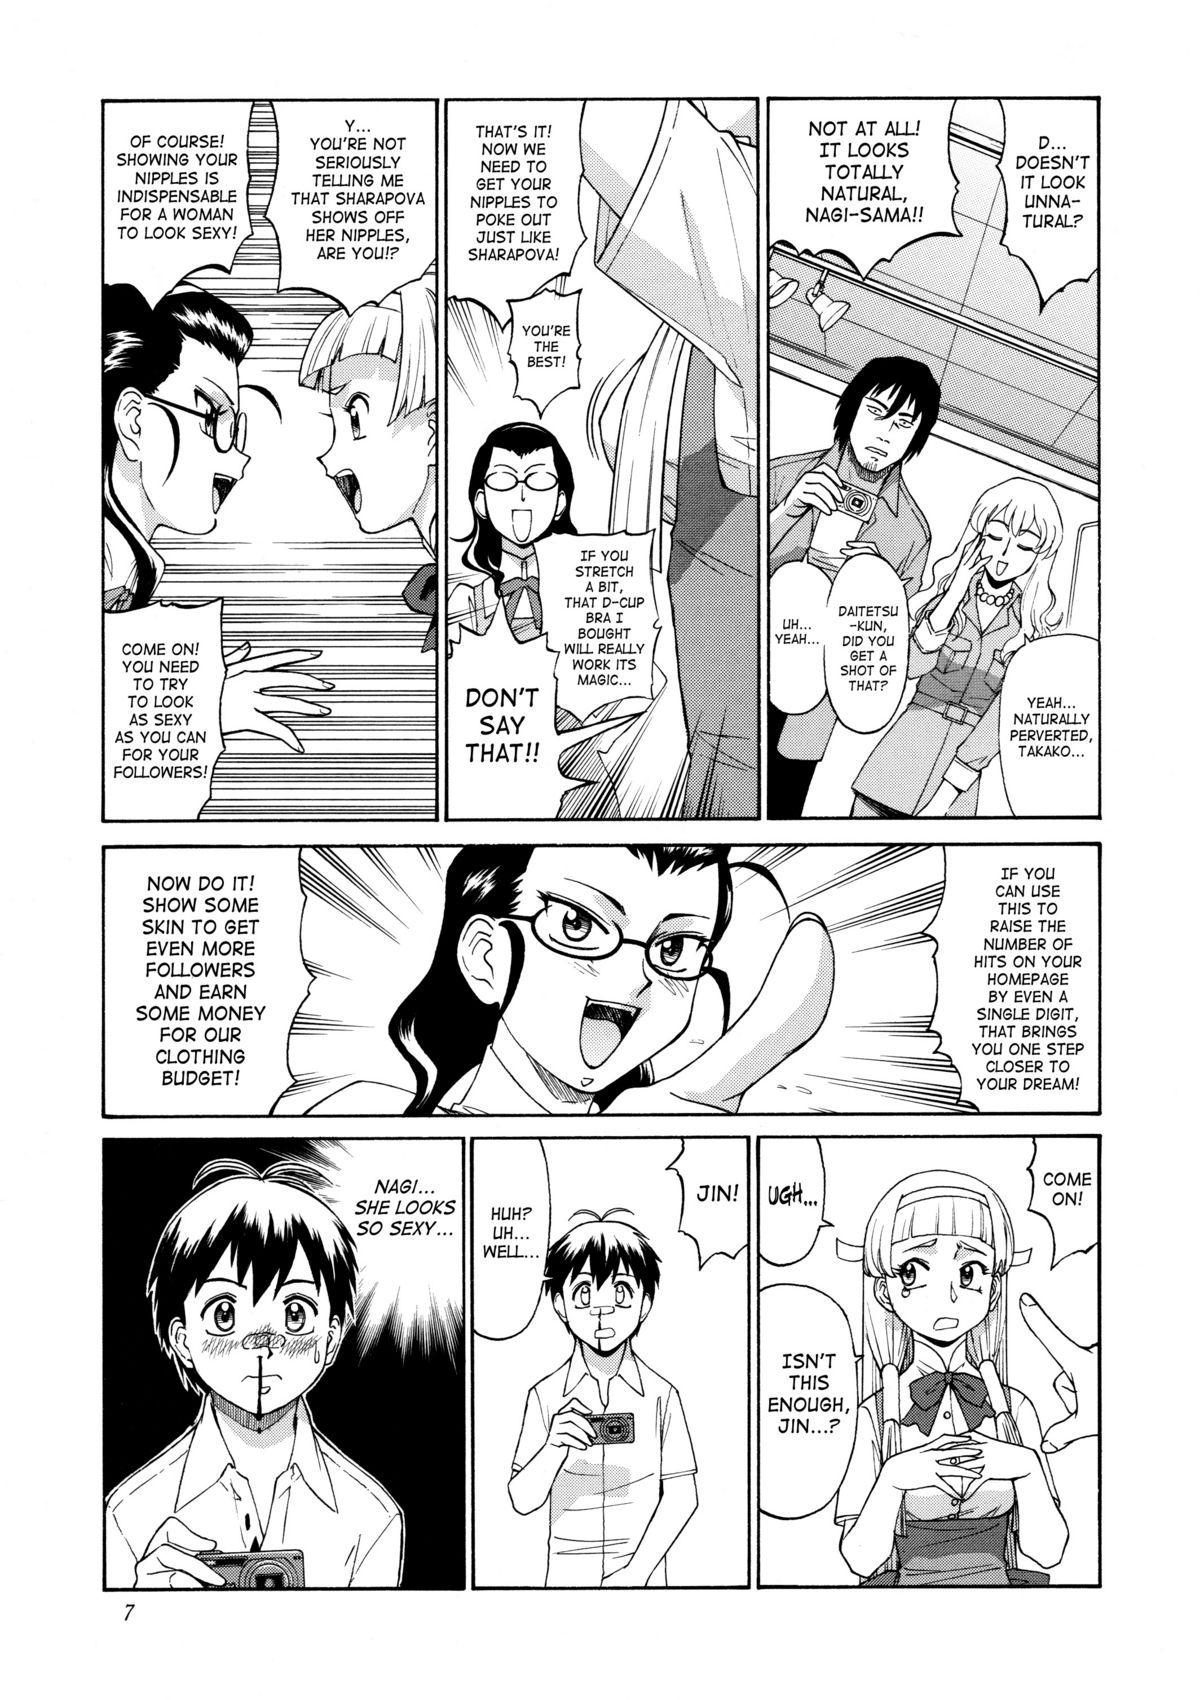 Pene Kamisama Megaton Punch 11 - Kannagi Wagaya no oinari-sama Girl Girl - Page 4